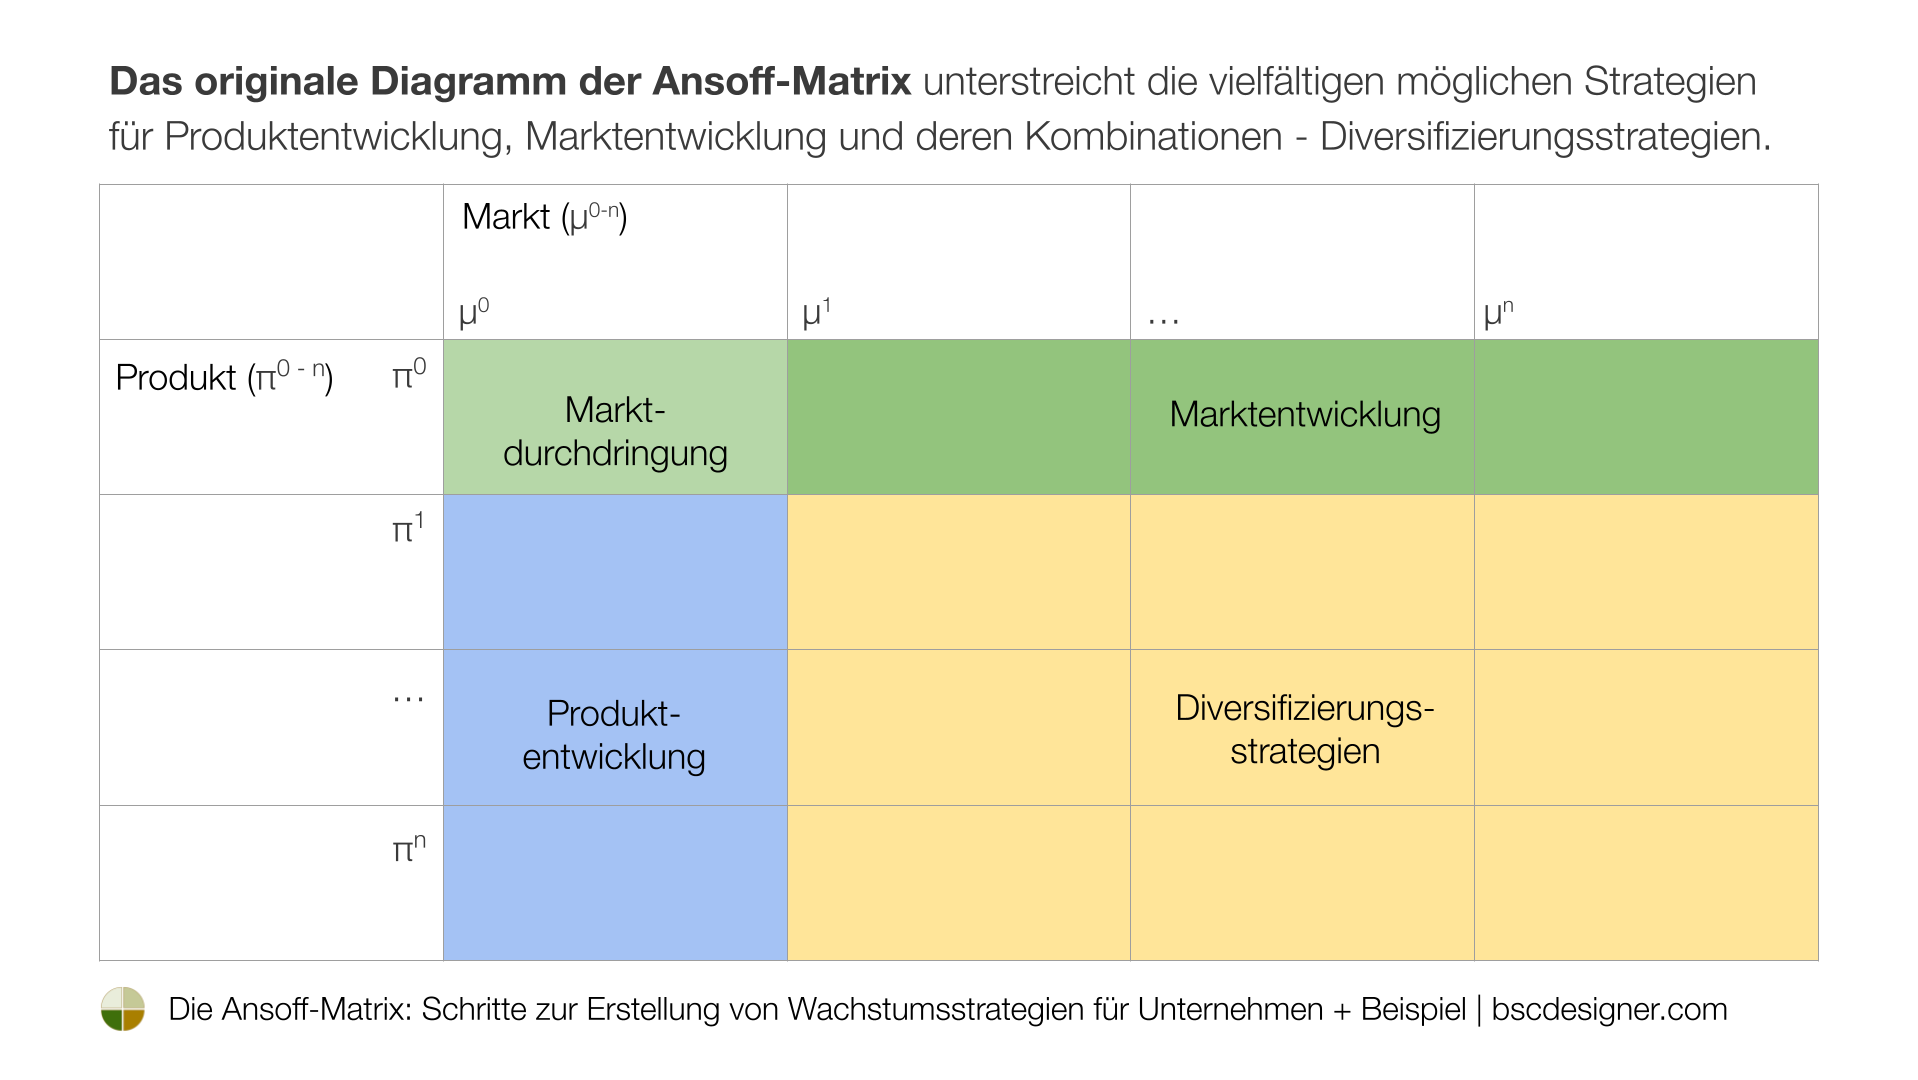 Das Originaldiagramm der Ansoff-Matrix verdeutlicht die vielfältigen möglichen Strategien für Produktentwicklung, Marktentwicklung und deren Kombinationen – Diversifizierungsstrategien.